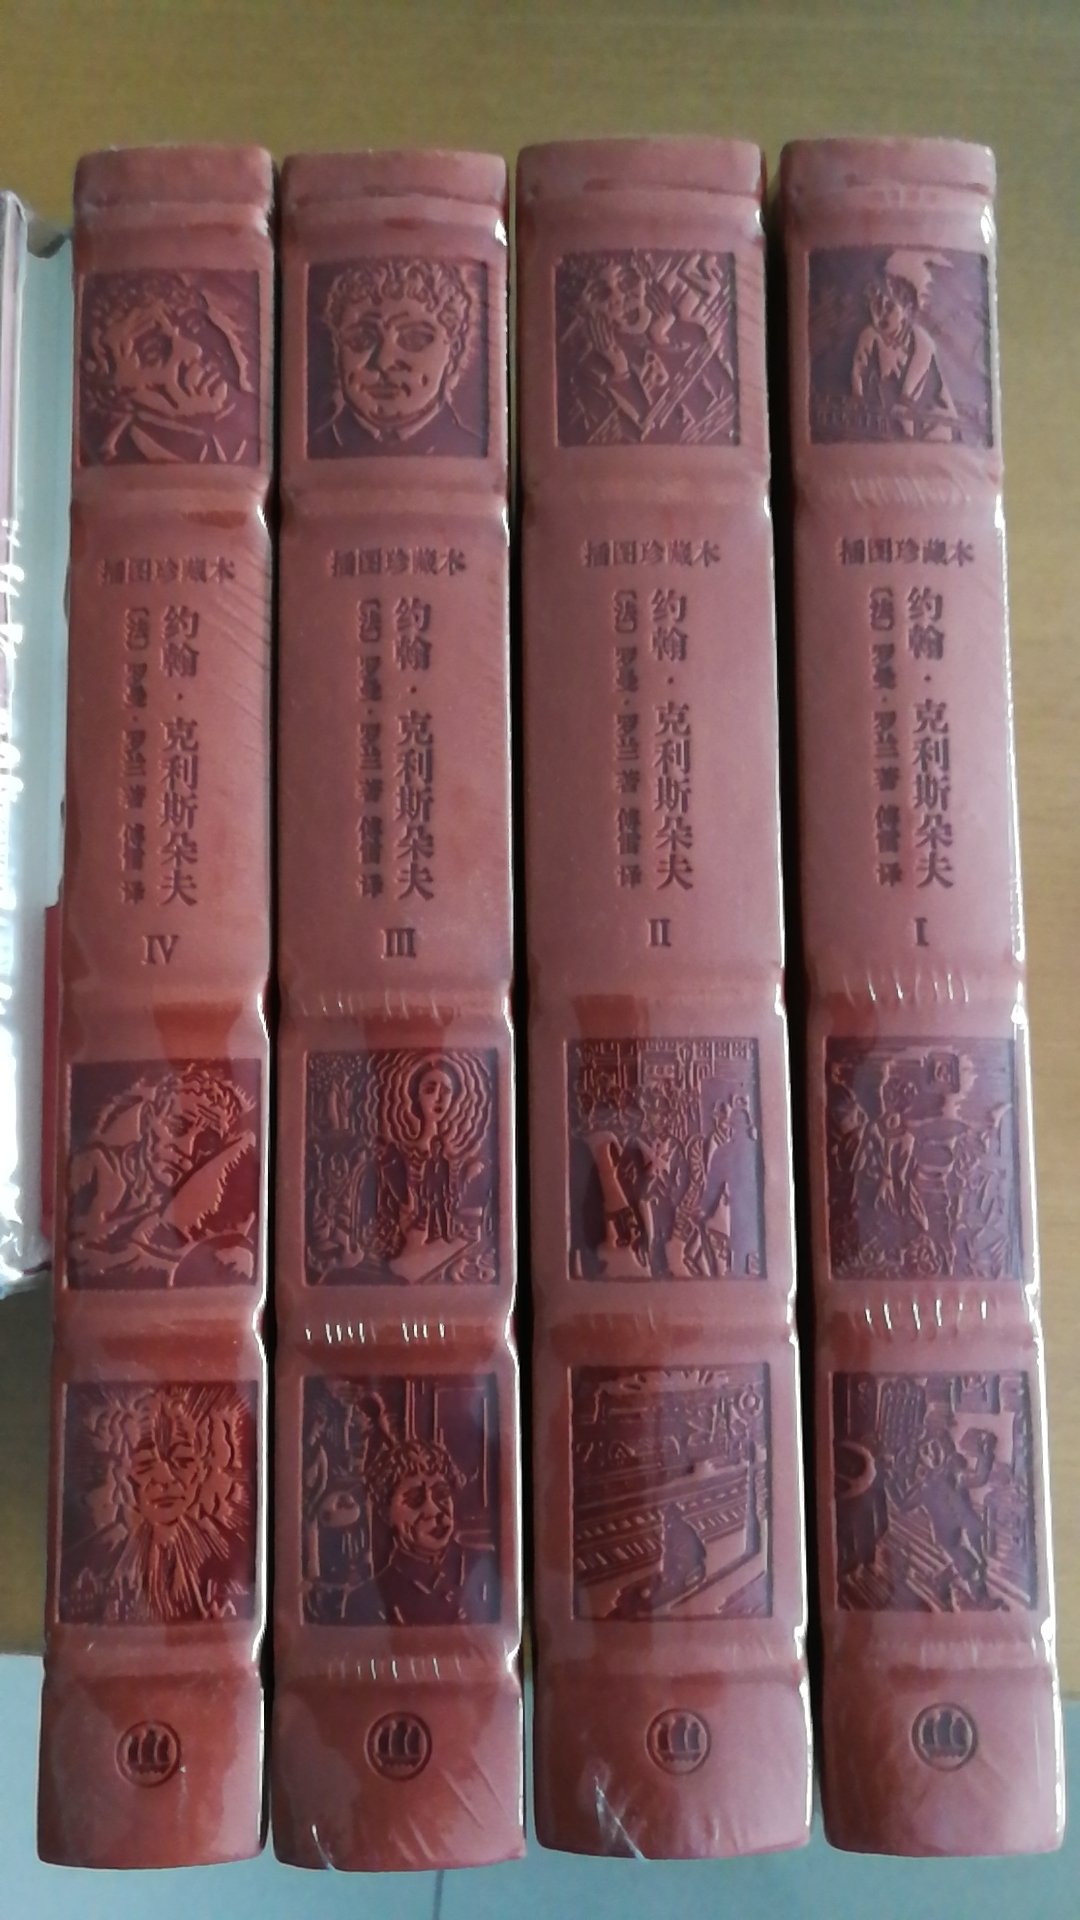 上海译文出版社推出的罗曼罗兰作品《约翰克里斯朵夫》，傅雷译本，书为仿皮面精装16开，书脊锁线纸质优良，排版印刷得体大方，活动期间价格优惠，送货速度也很快，非常满意。